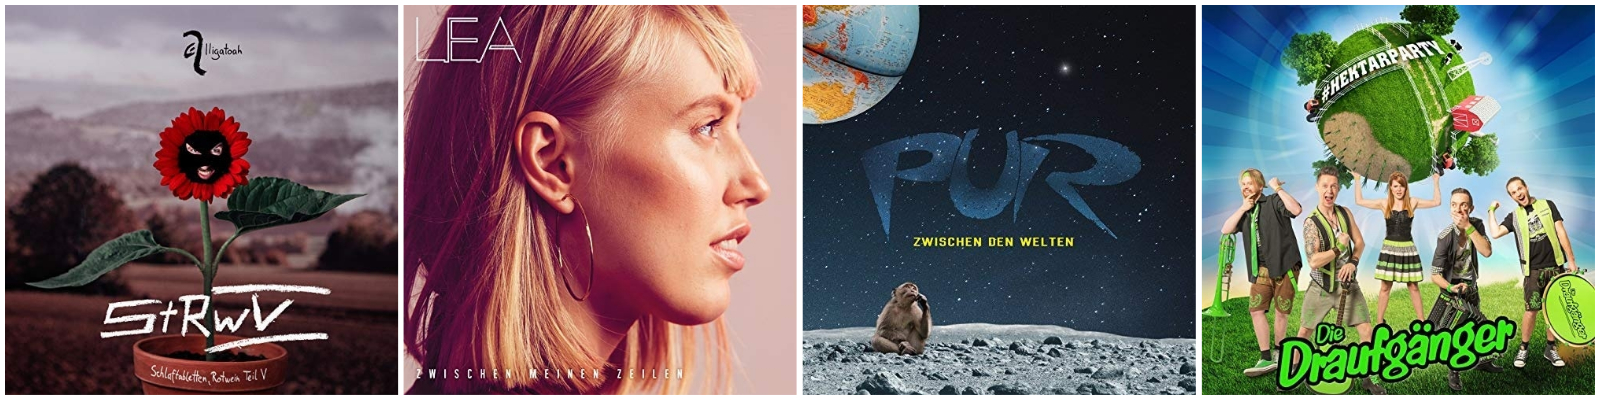 Neue deutsche Musik-Alben